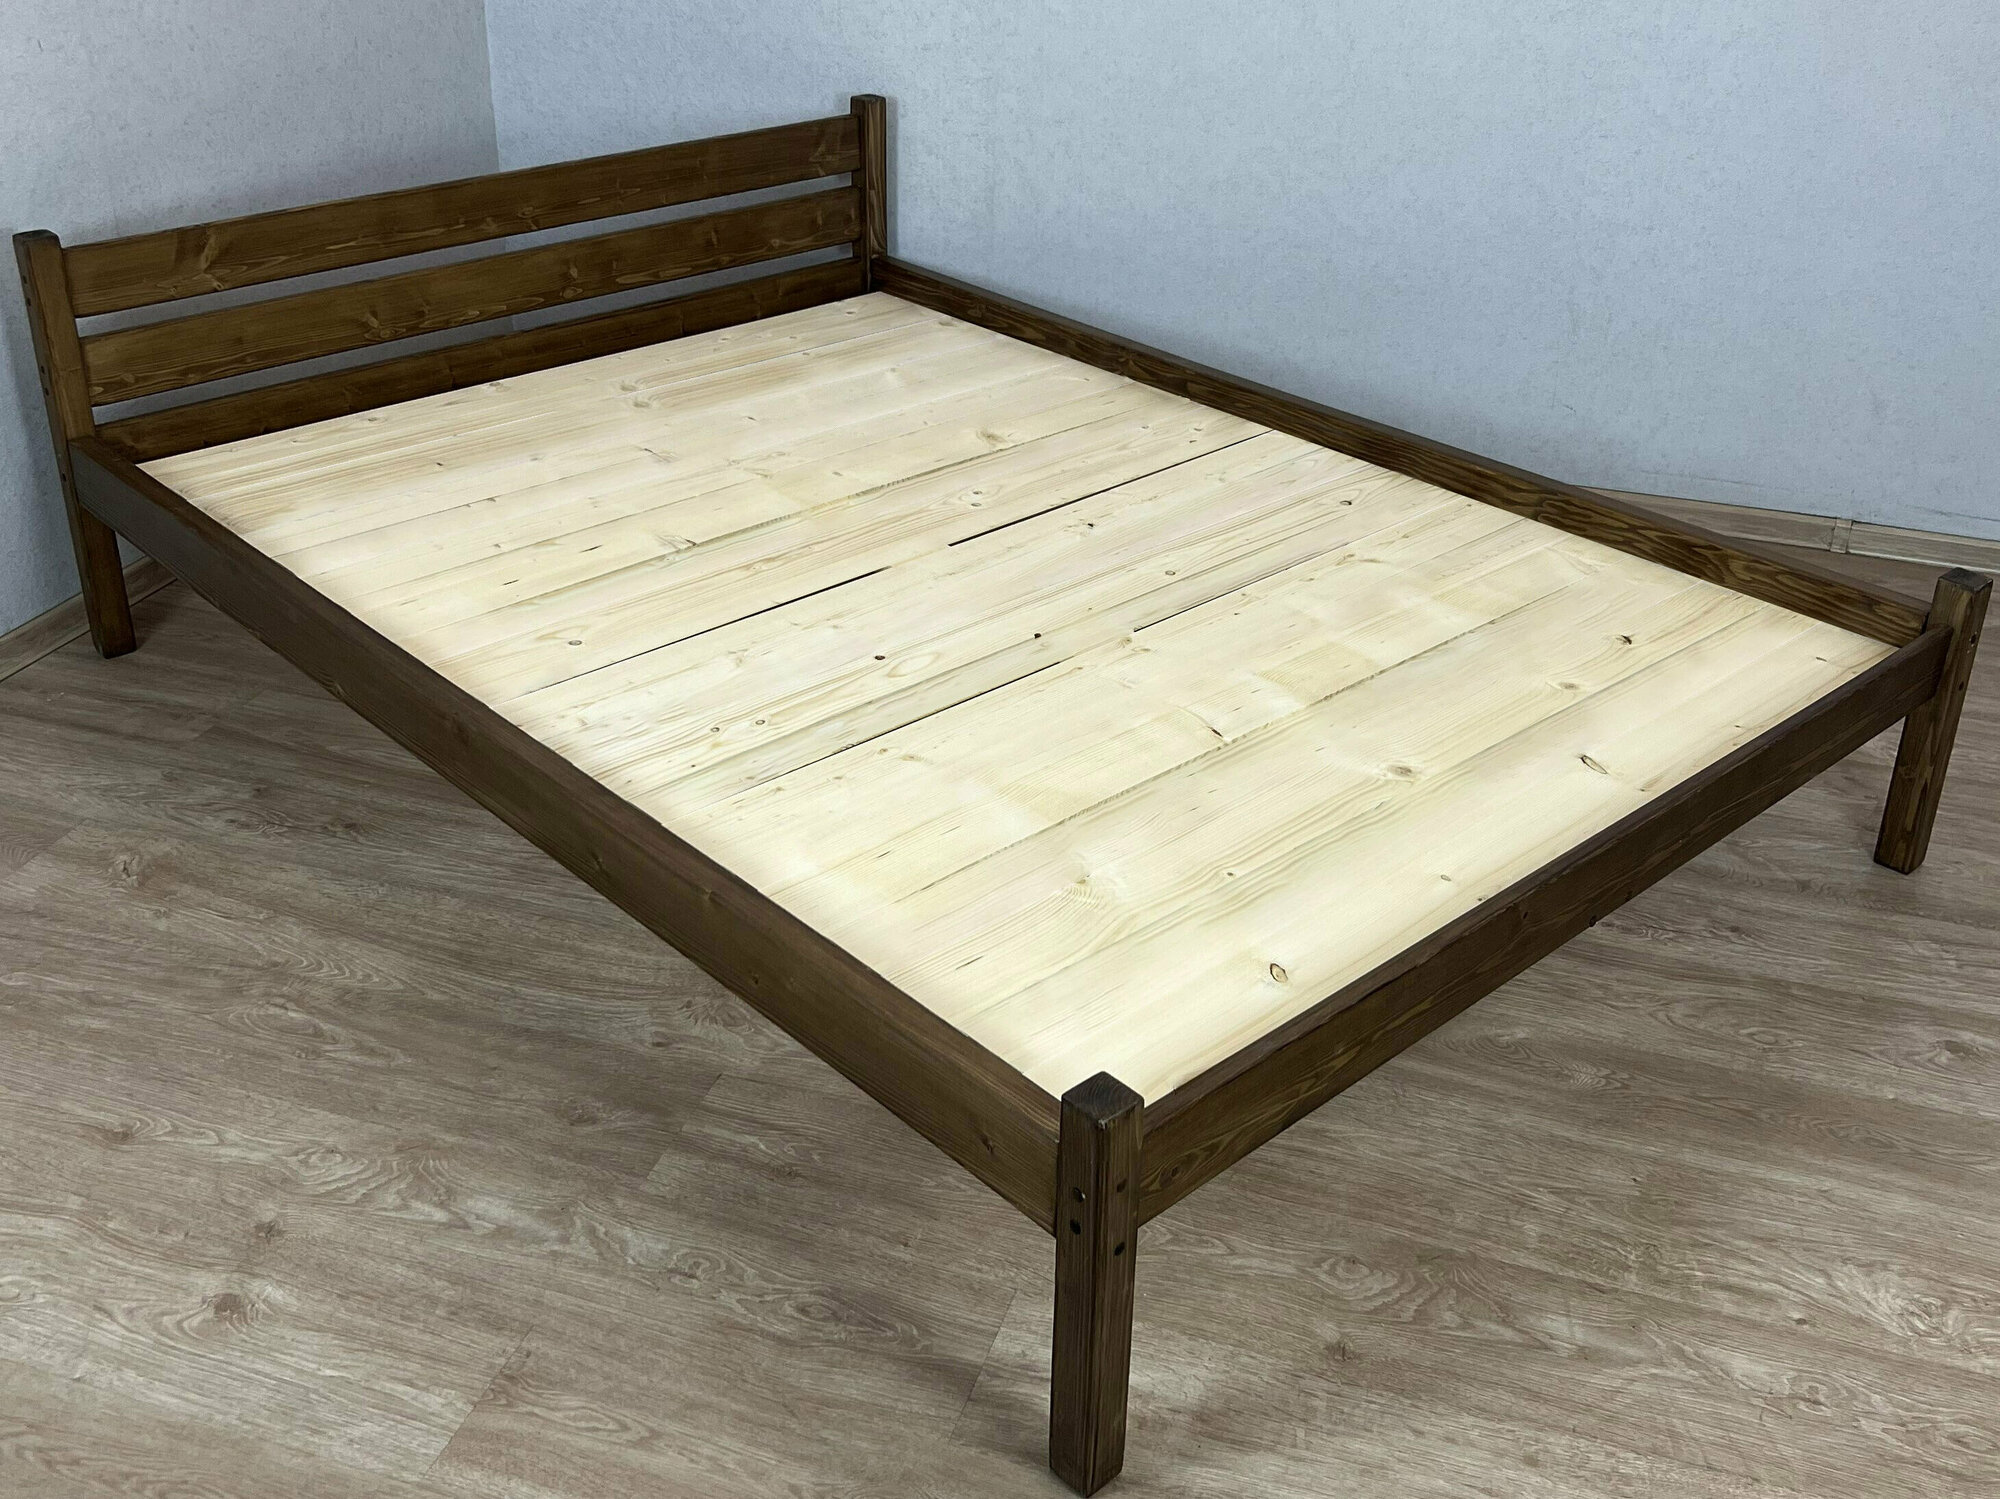 Кровать двуспальная Классика из массива сосны со сплошным основанием, 200х140 см (габариты 210х150), цвет темный дуб